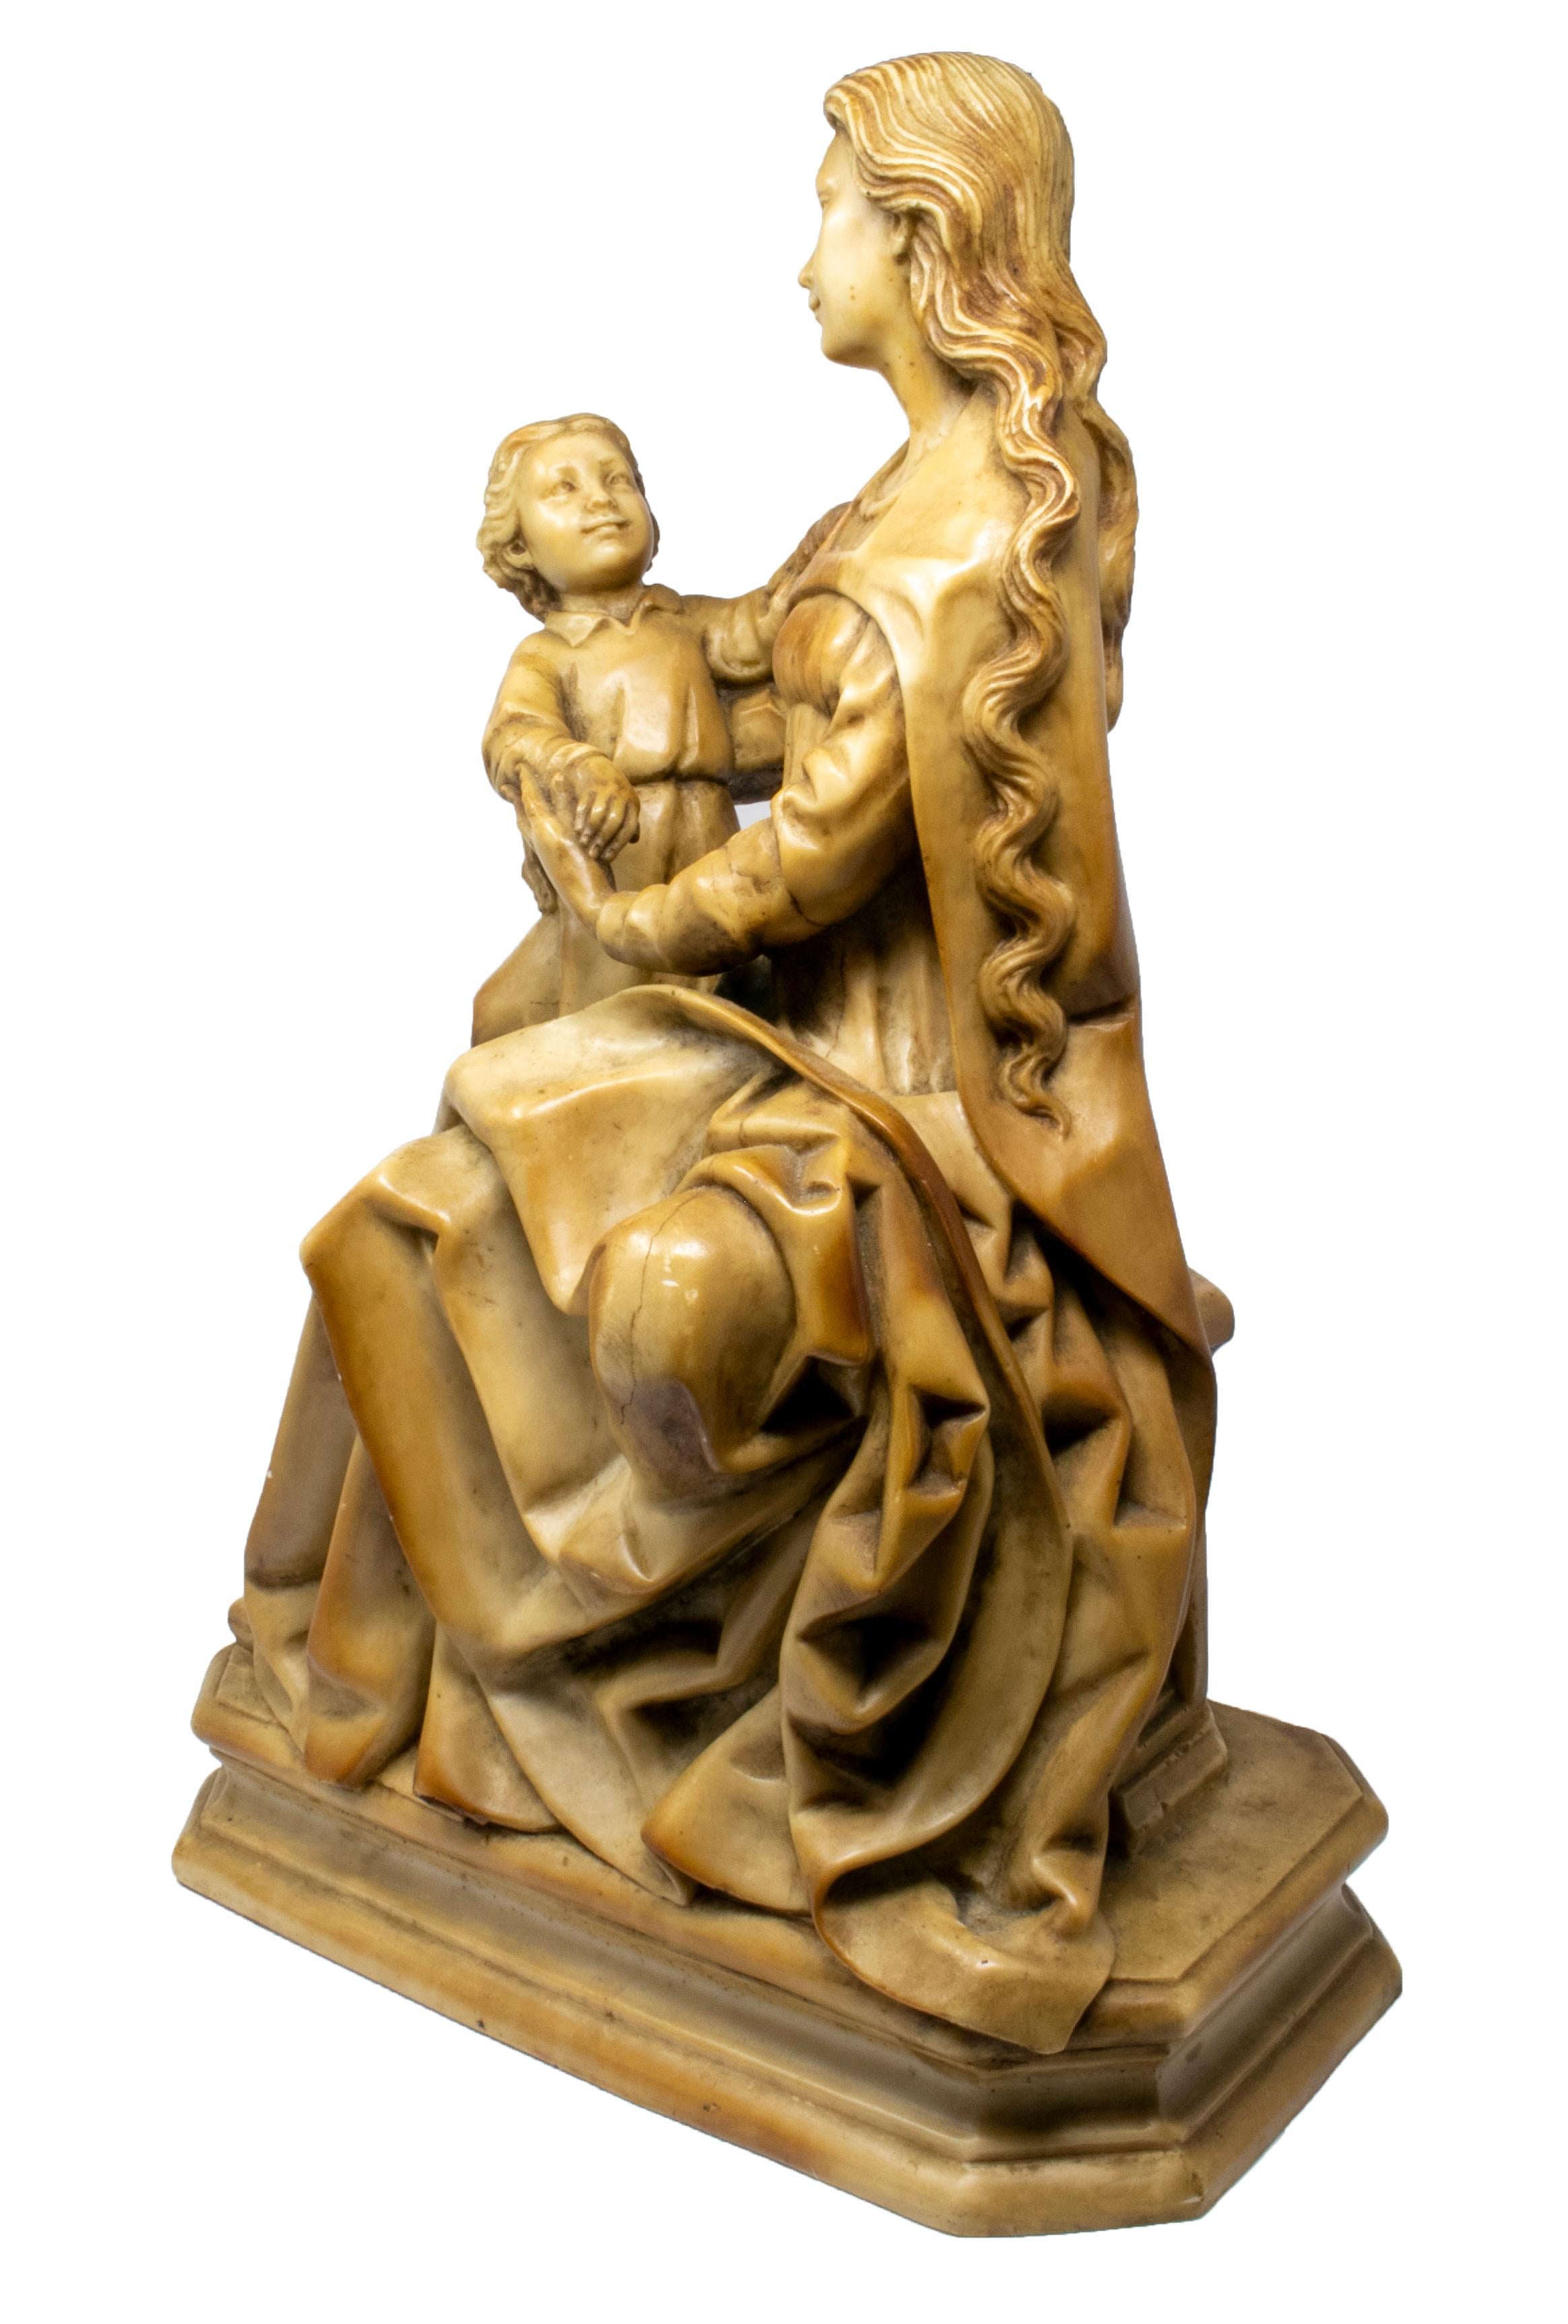 vierge à l'enfant en albâtre de style néo-gothique italien du XIXe siècle.